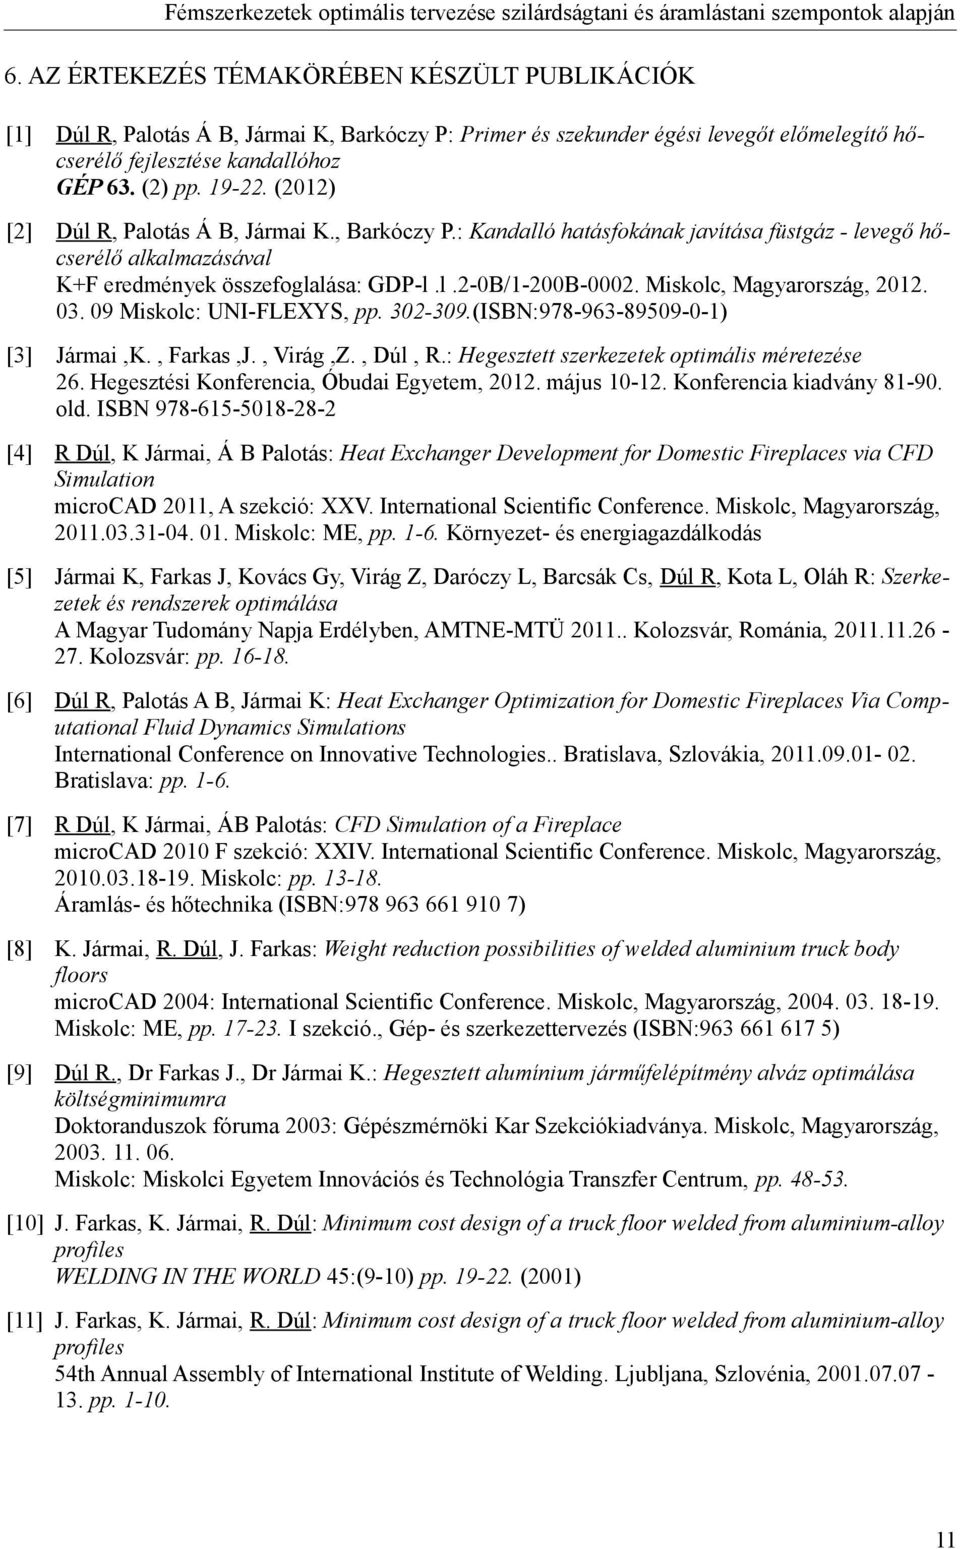 Miskolc, Magyarország, 2012. 03. 09 Miskolc: UNI-FLEXYS, pp. 302-309.(ISBN:978-963-89509-0-1) [3] Jármai,K., Farkas,J., Virág,Z., Dúl, R.: Hegesztett szerkezetek optimális méretezése 26.